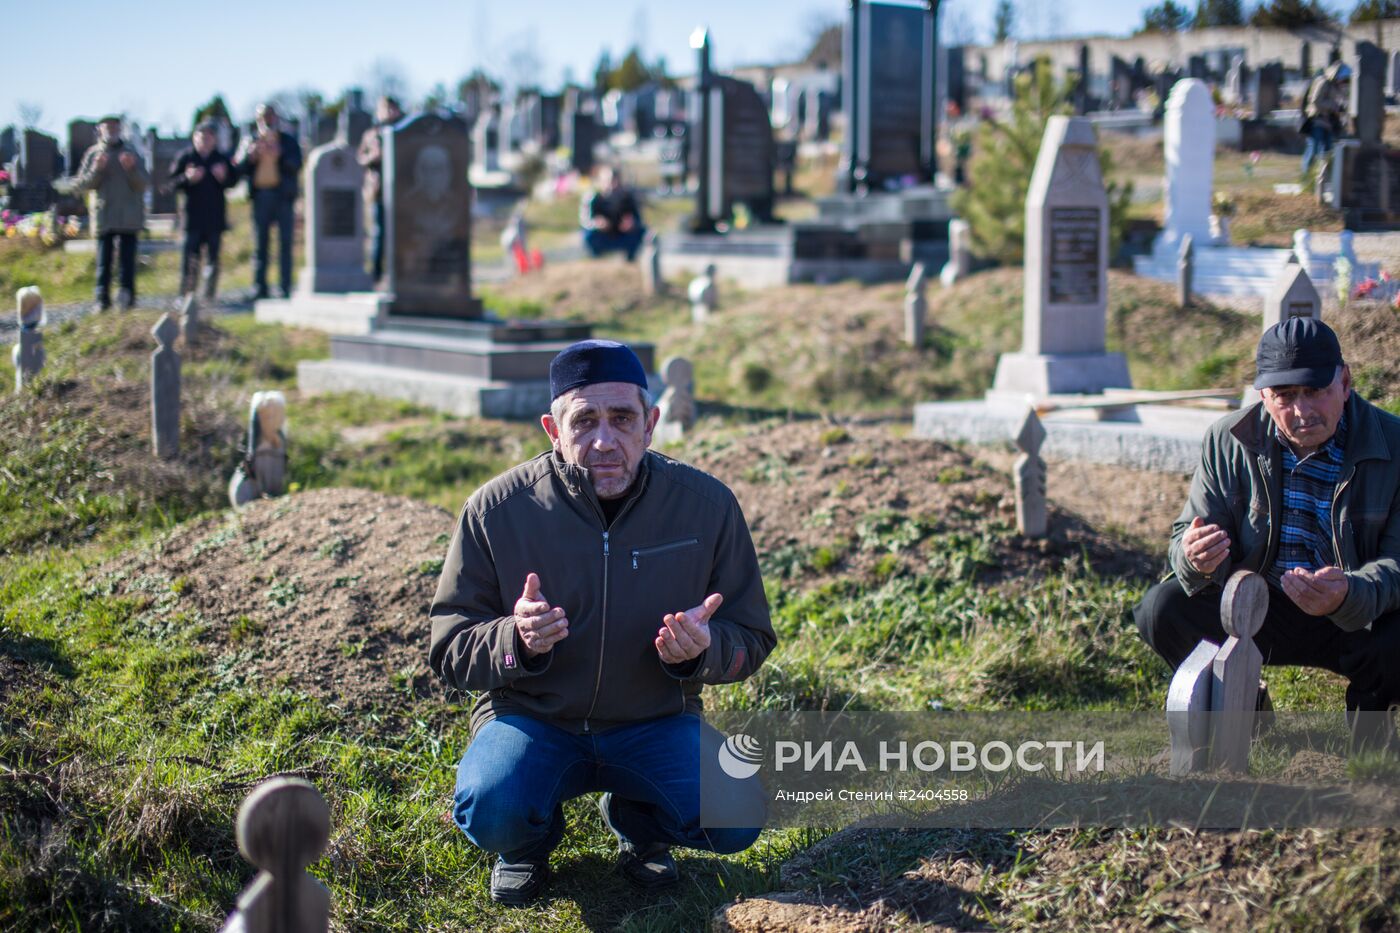 Традиционные похороны крымских татар на мусульманском кладбище Абдал в Симферополе